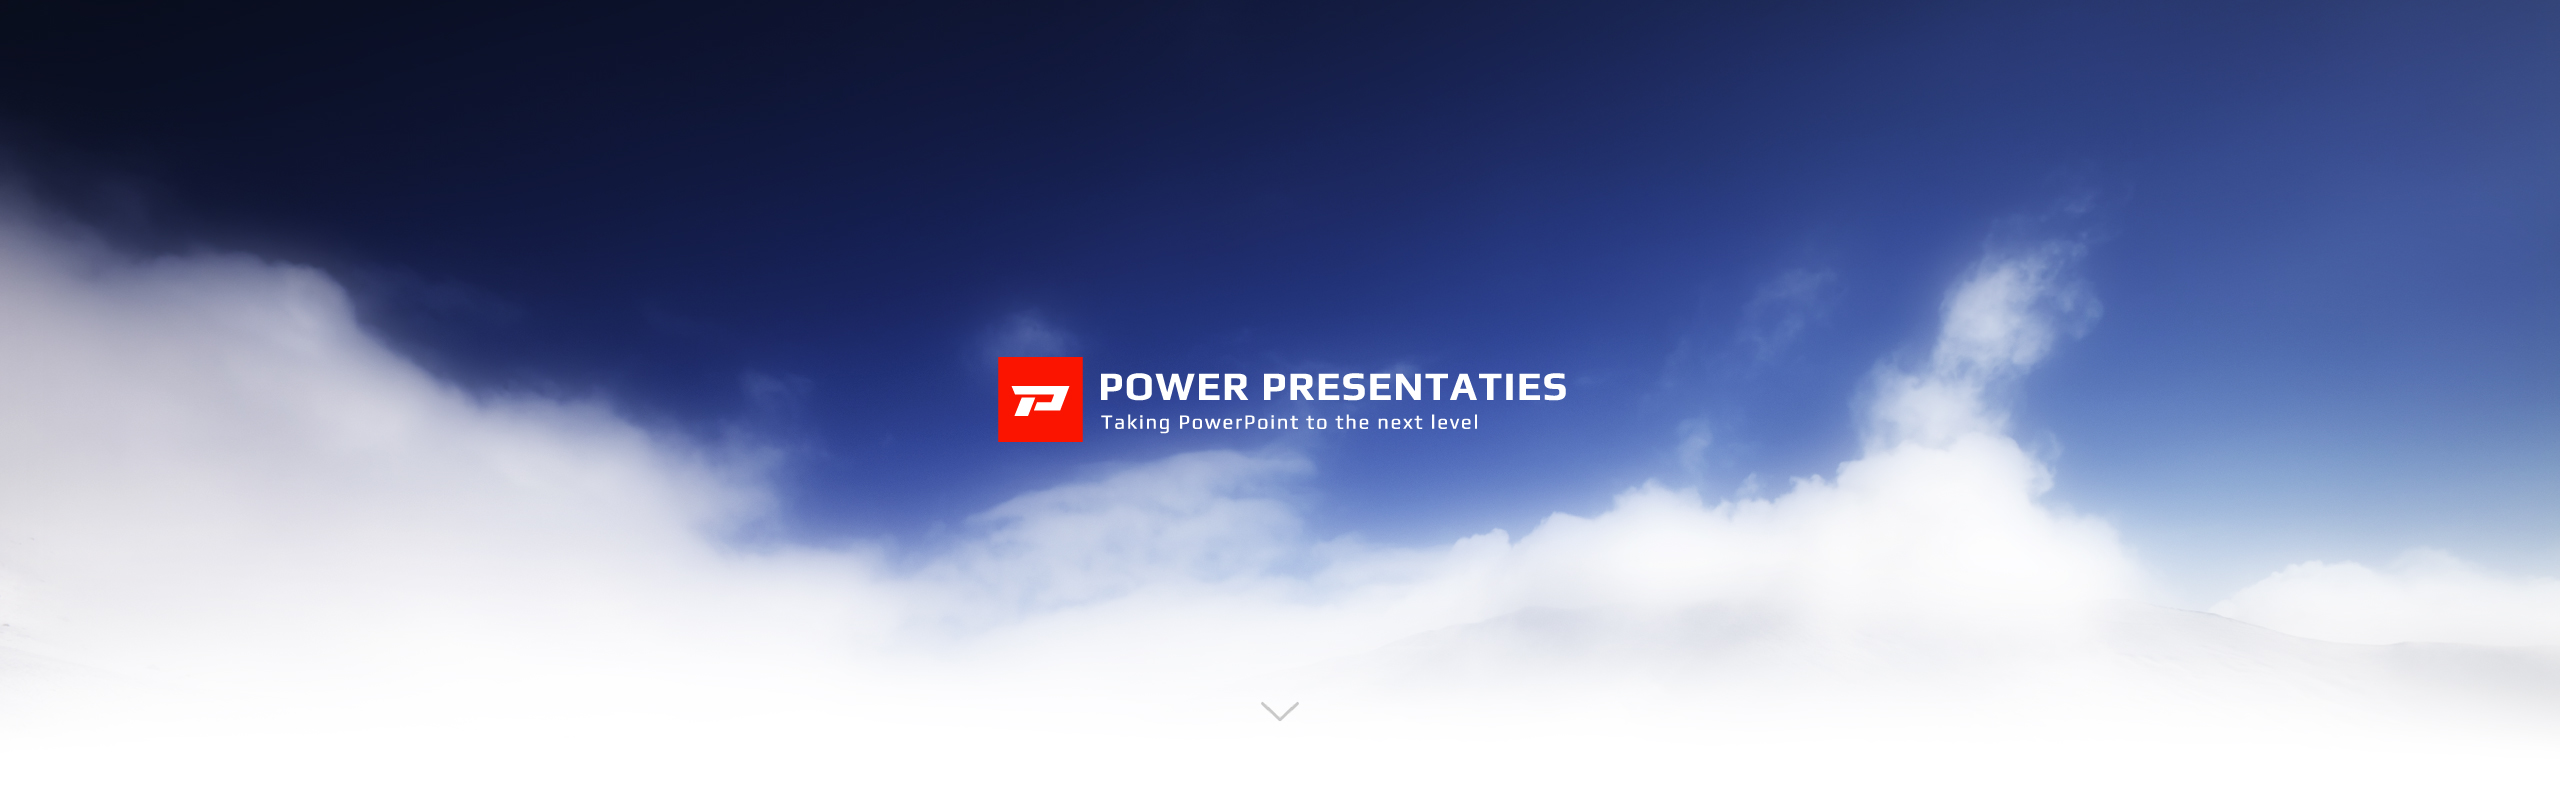 Power Presentaties